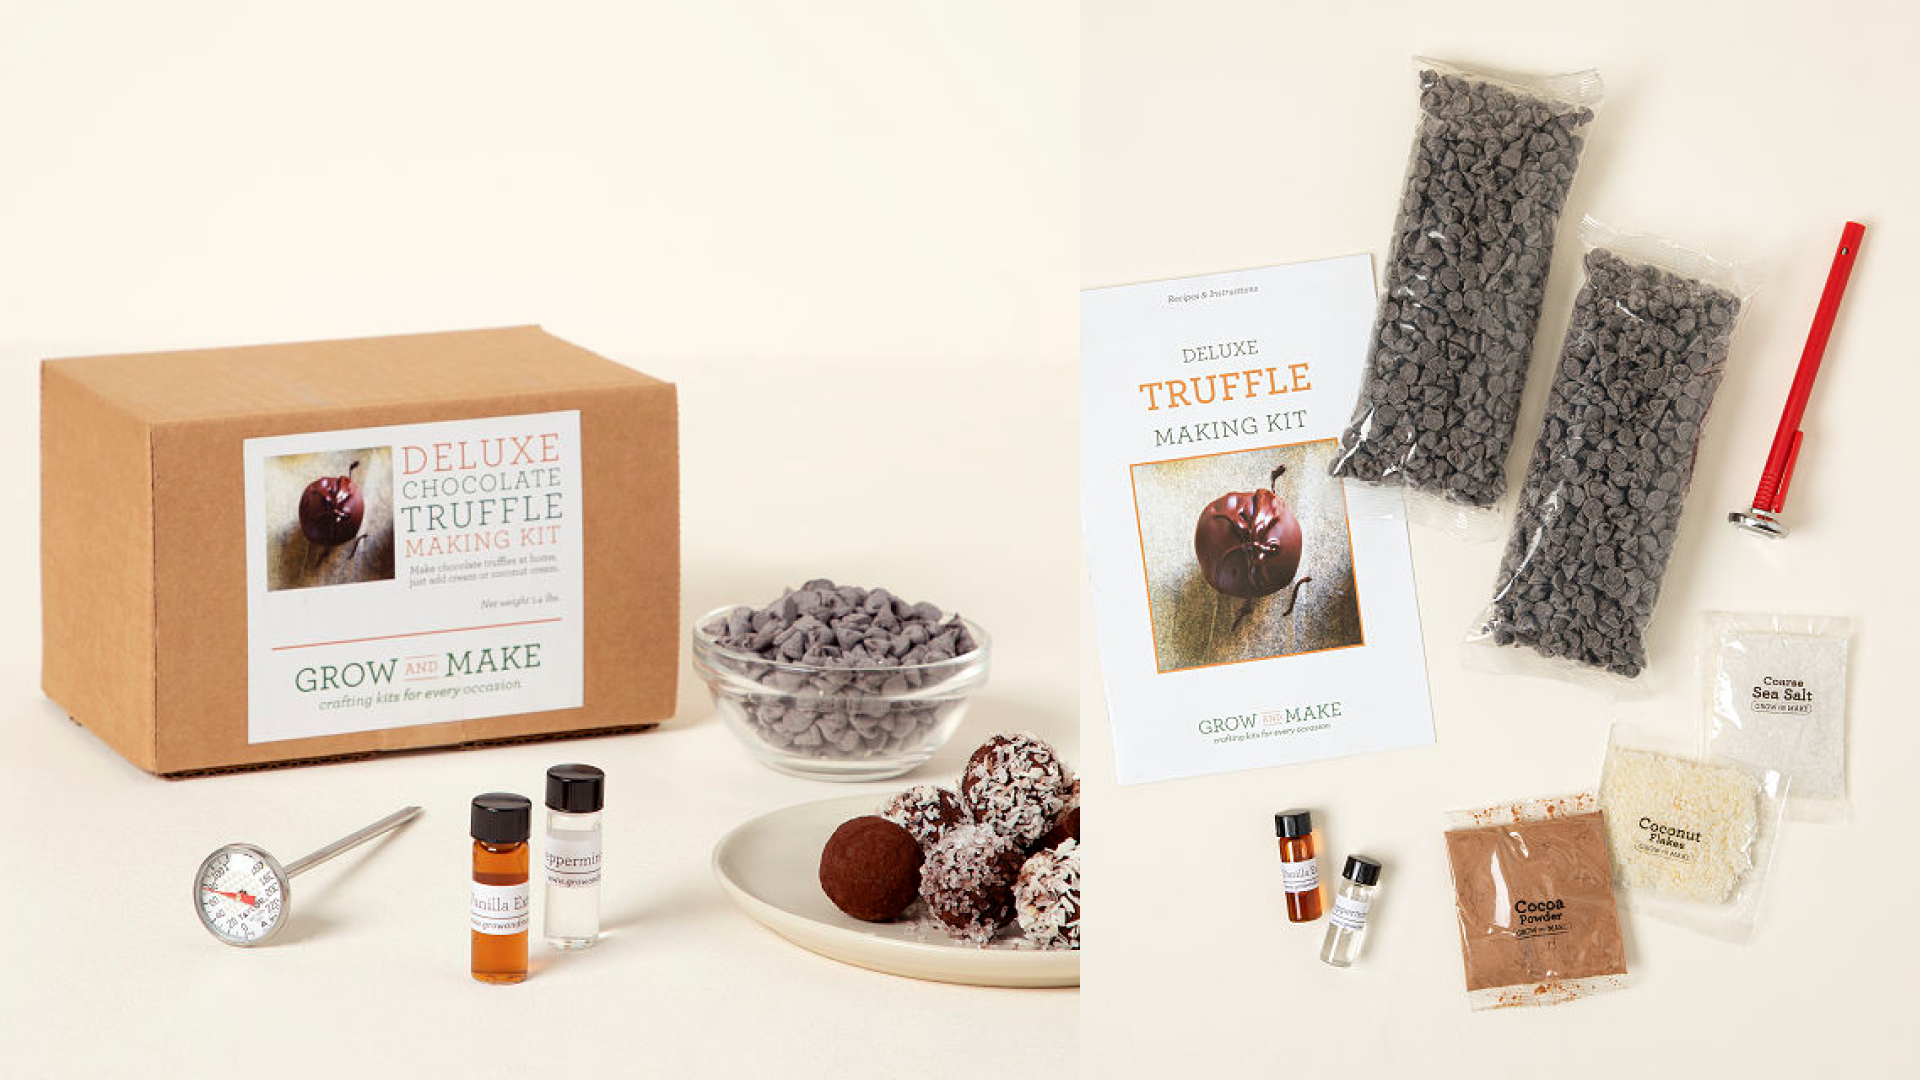 Make-your-own-truffles kit